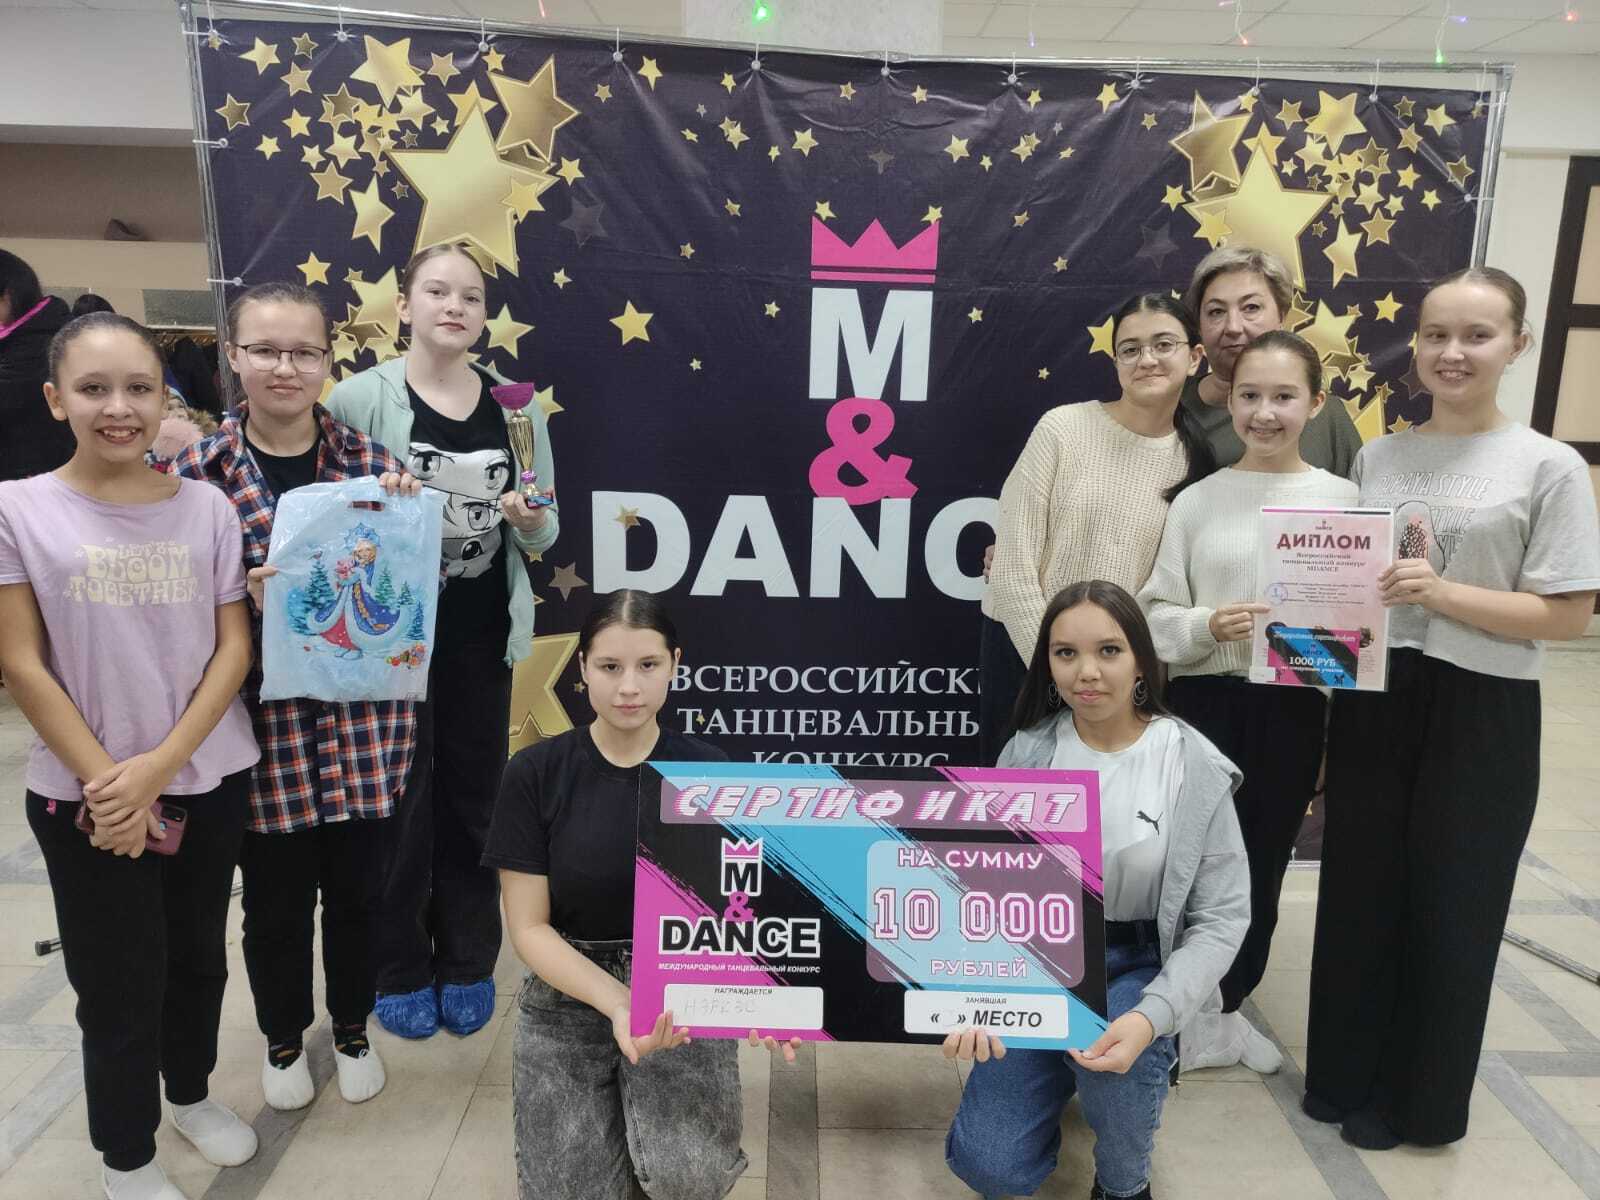 Ансамбль Нэркэс Детской школы искусств стал обладателем Гран-при и денежного приза Всероссийского танцевального конкурса М§dance.